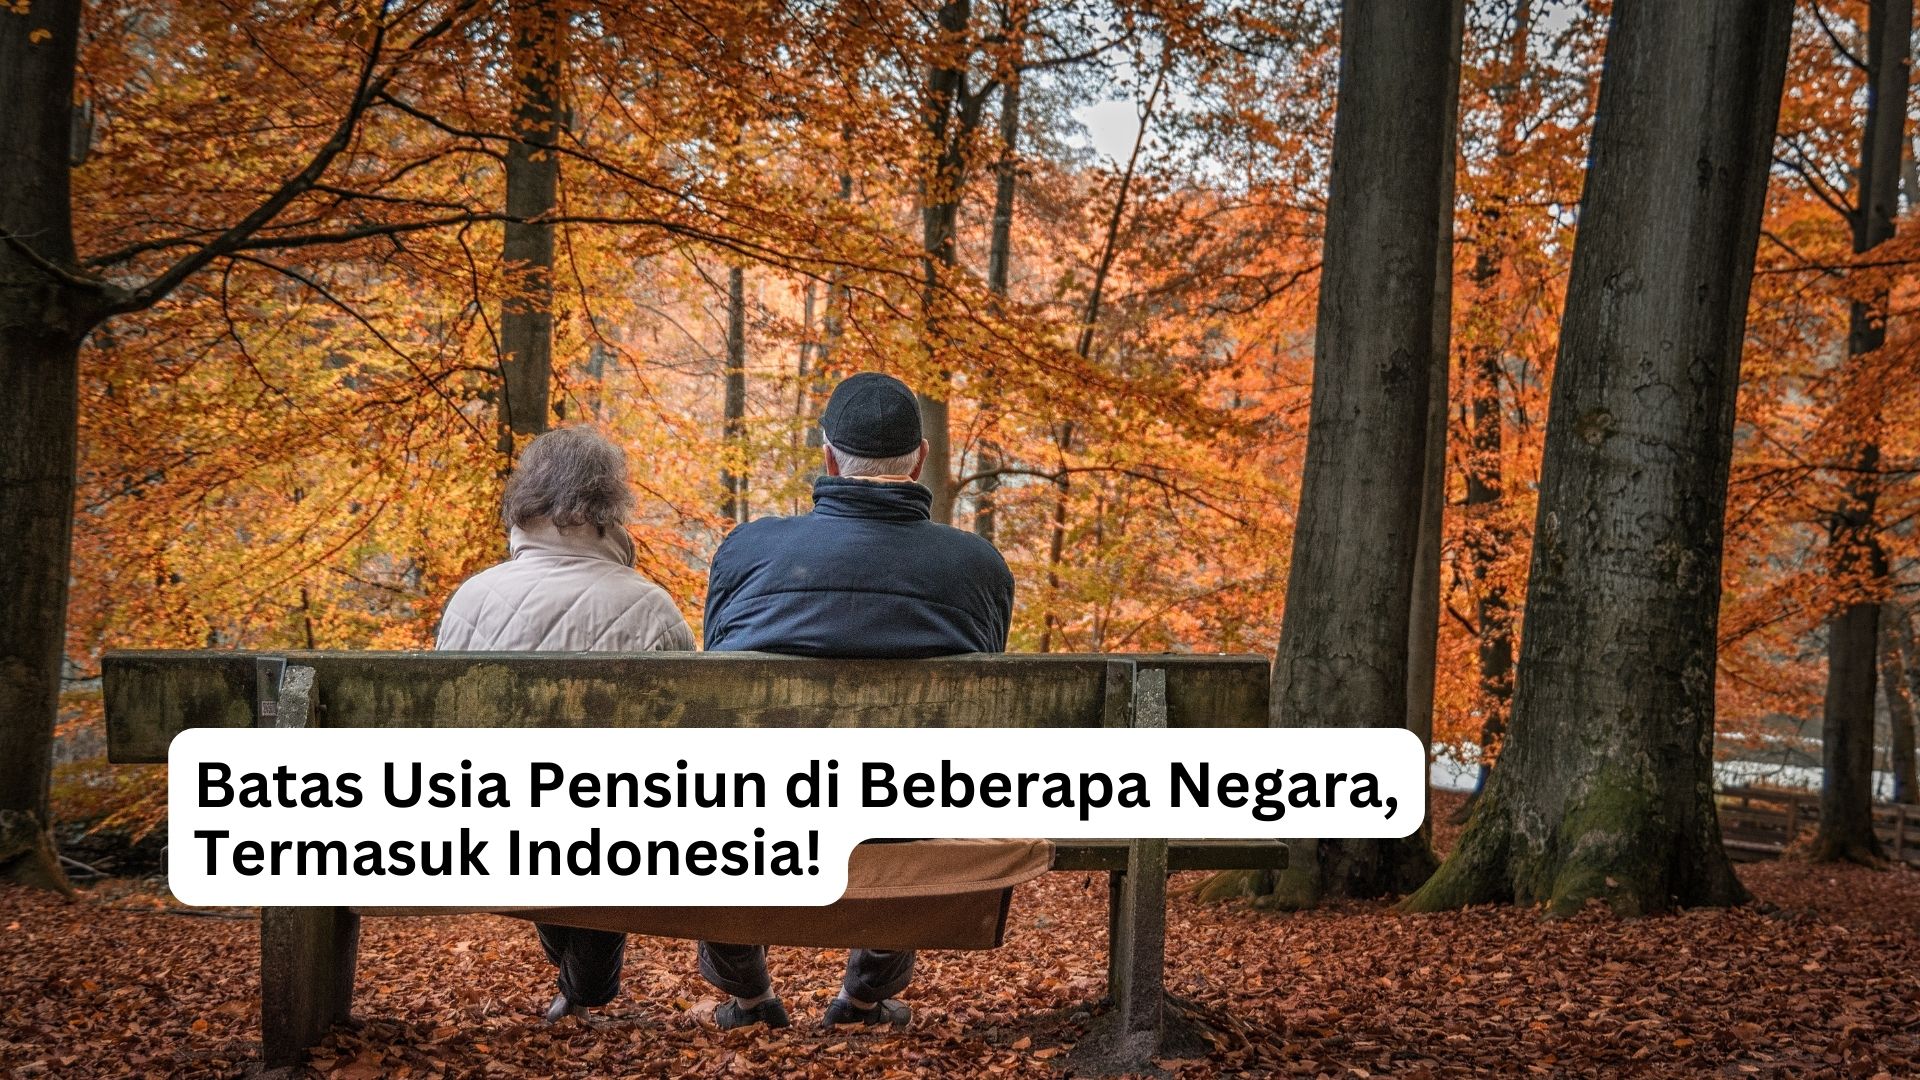 You are currently viewing Batas Usia Pensiun di Beberapa Negara, Termasuk Indonesia!